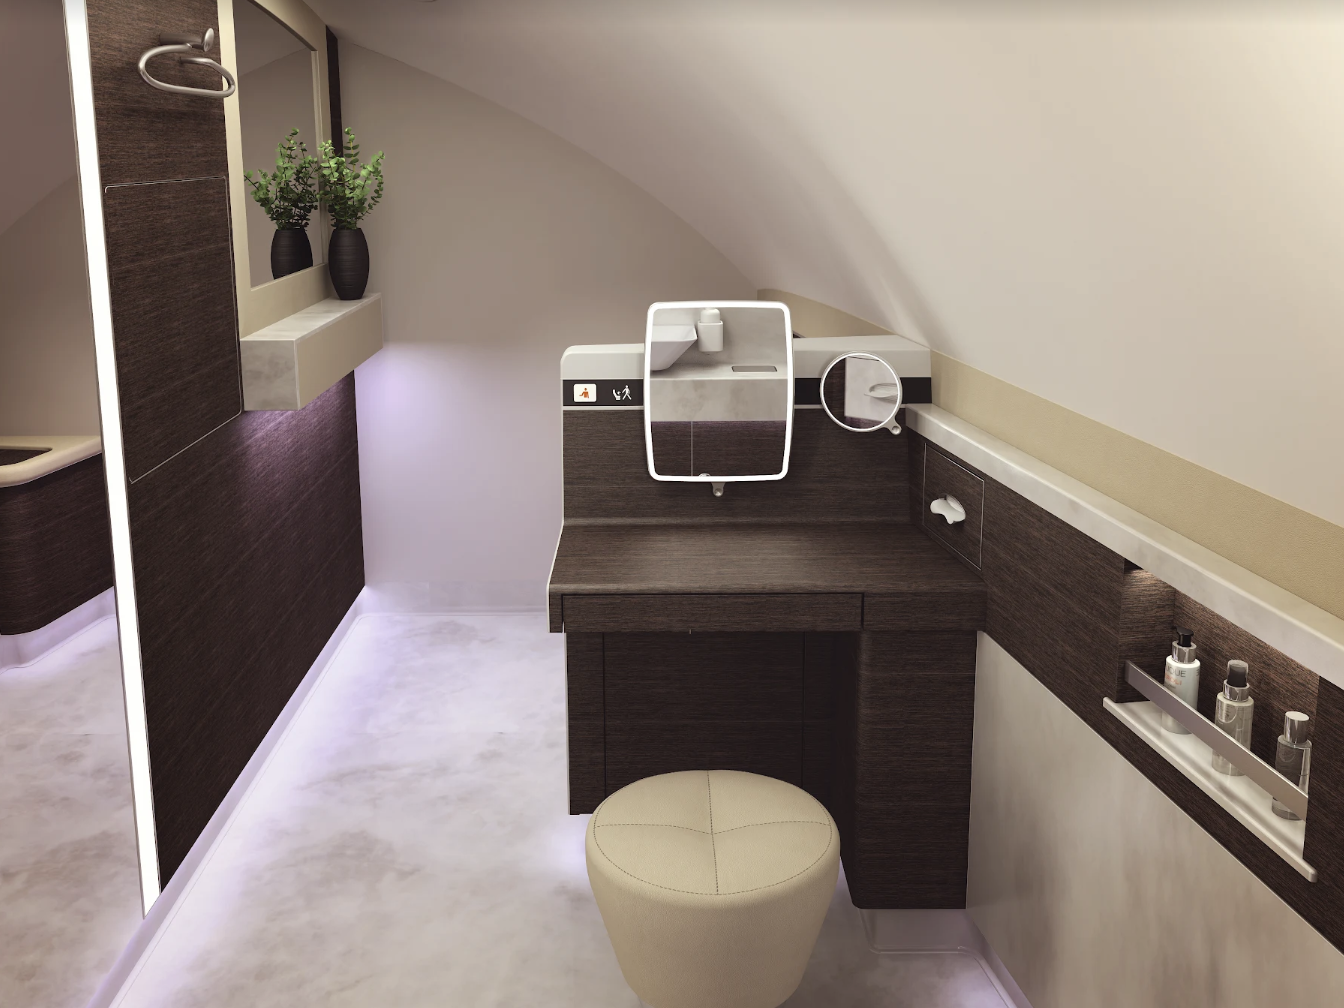 De eersteklas suite van Singapore heeft twee enorme toiletten, beide met een wastafel.